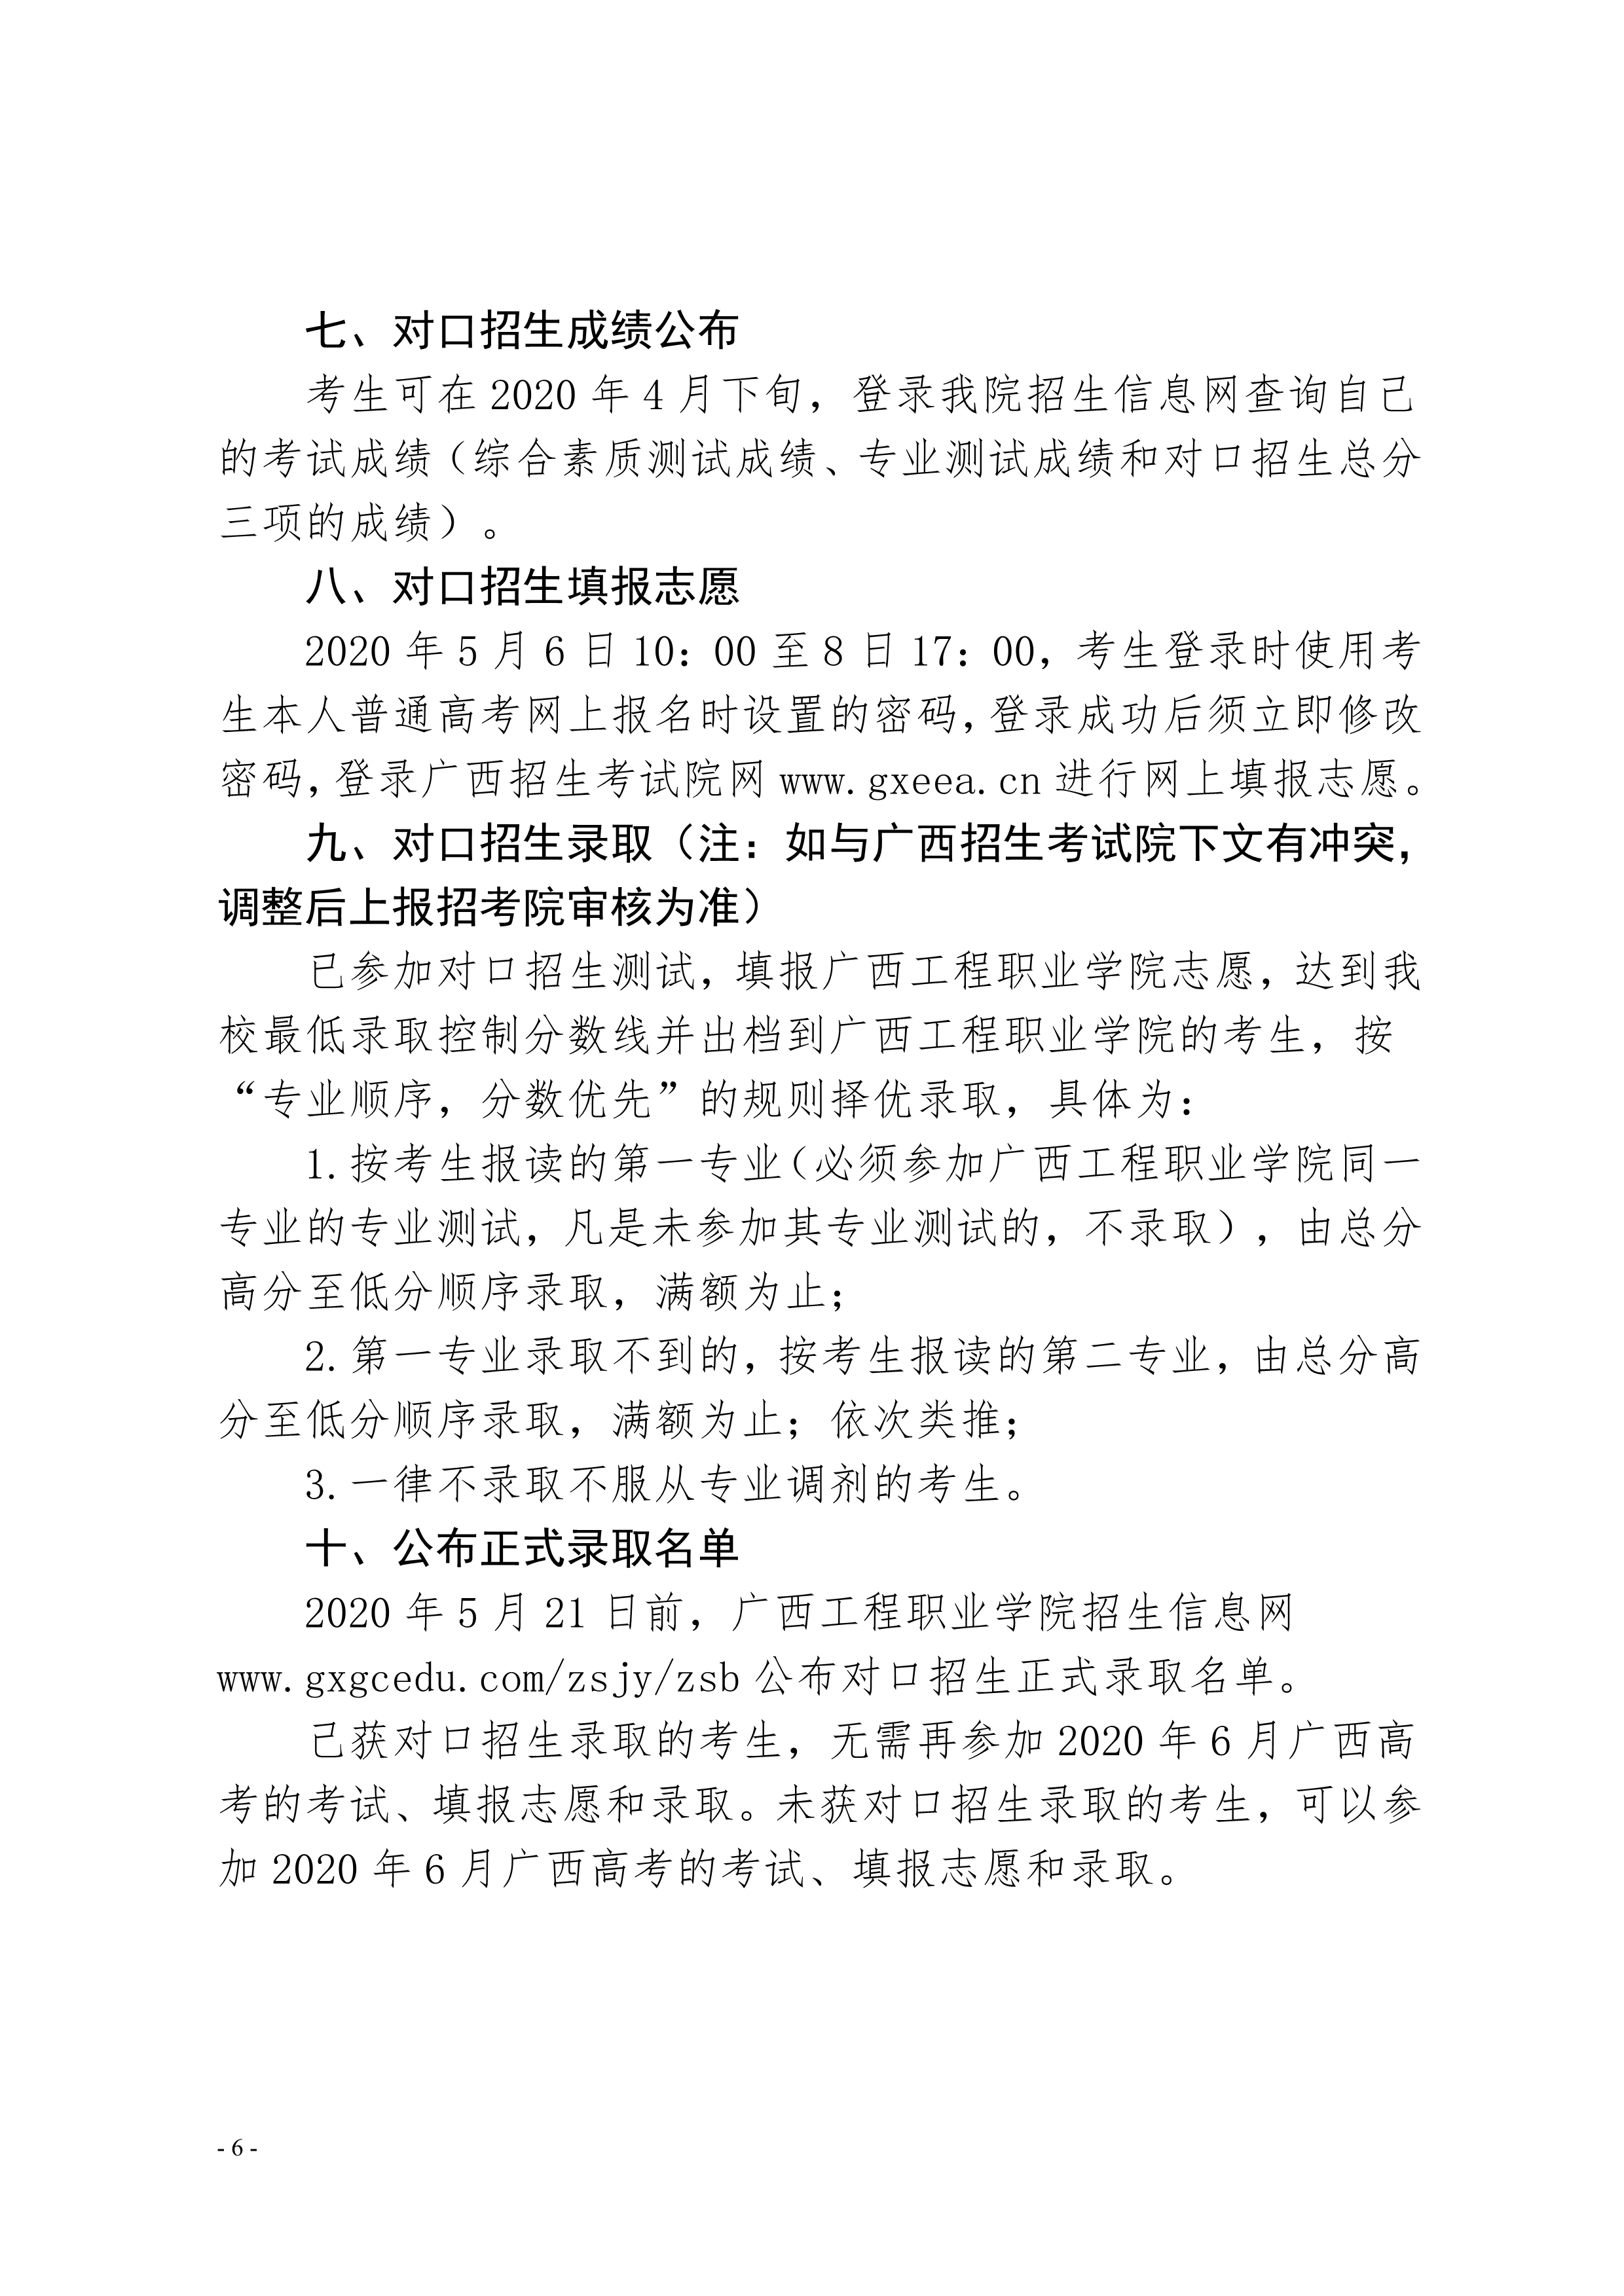 广西工程职业学院2020年对口自主招生简章